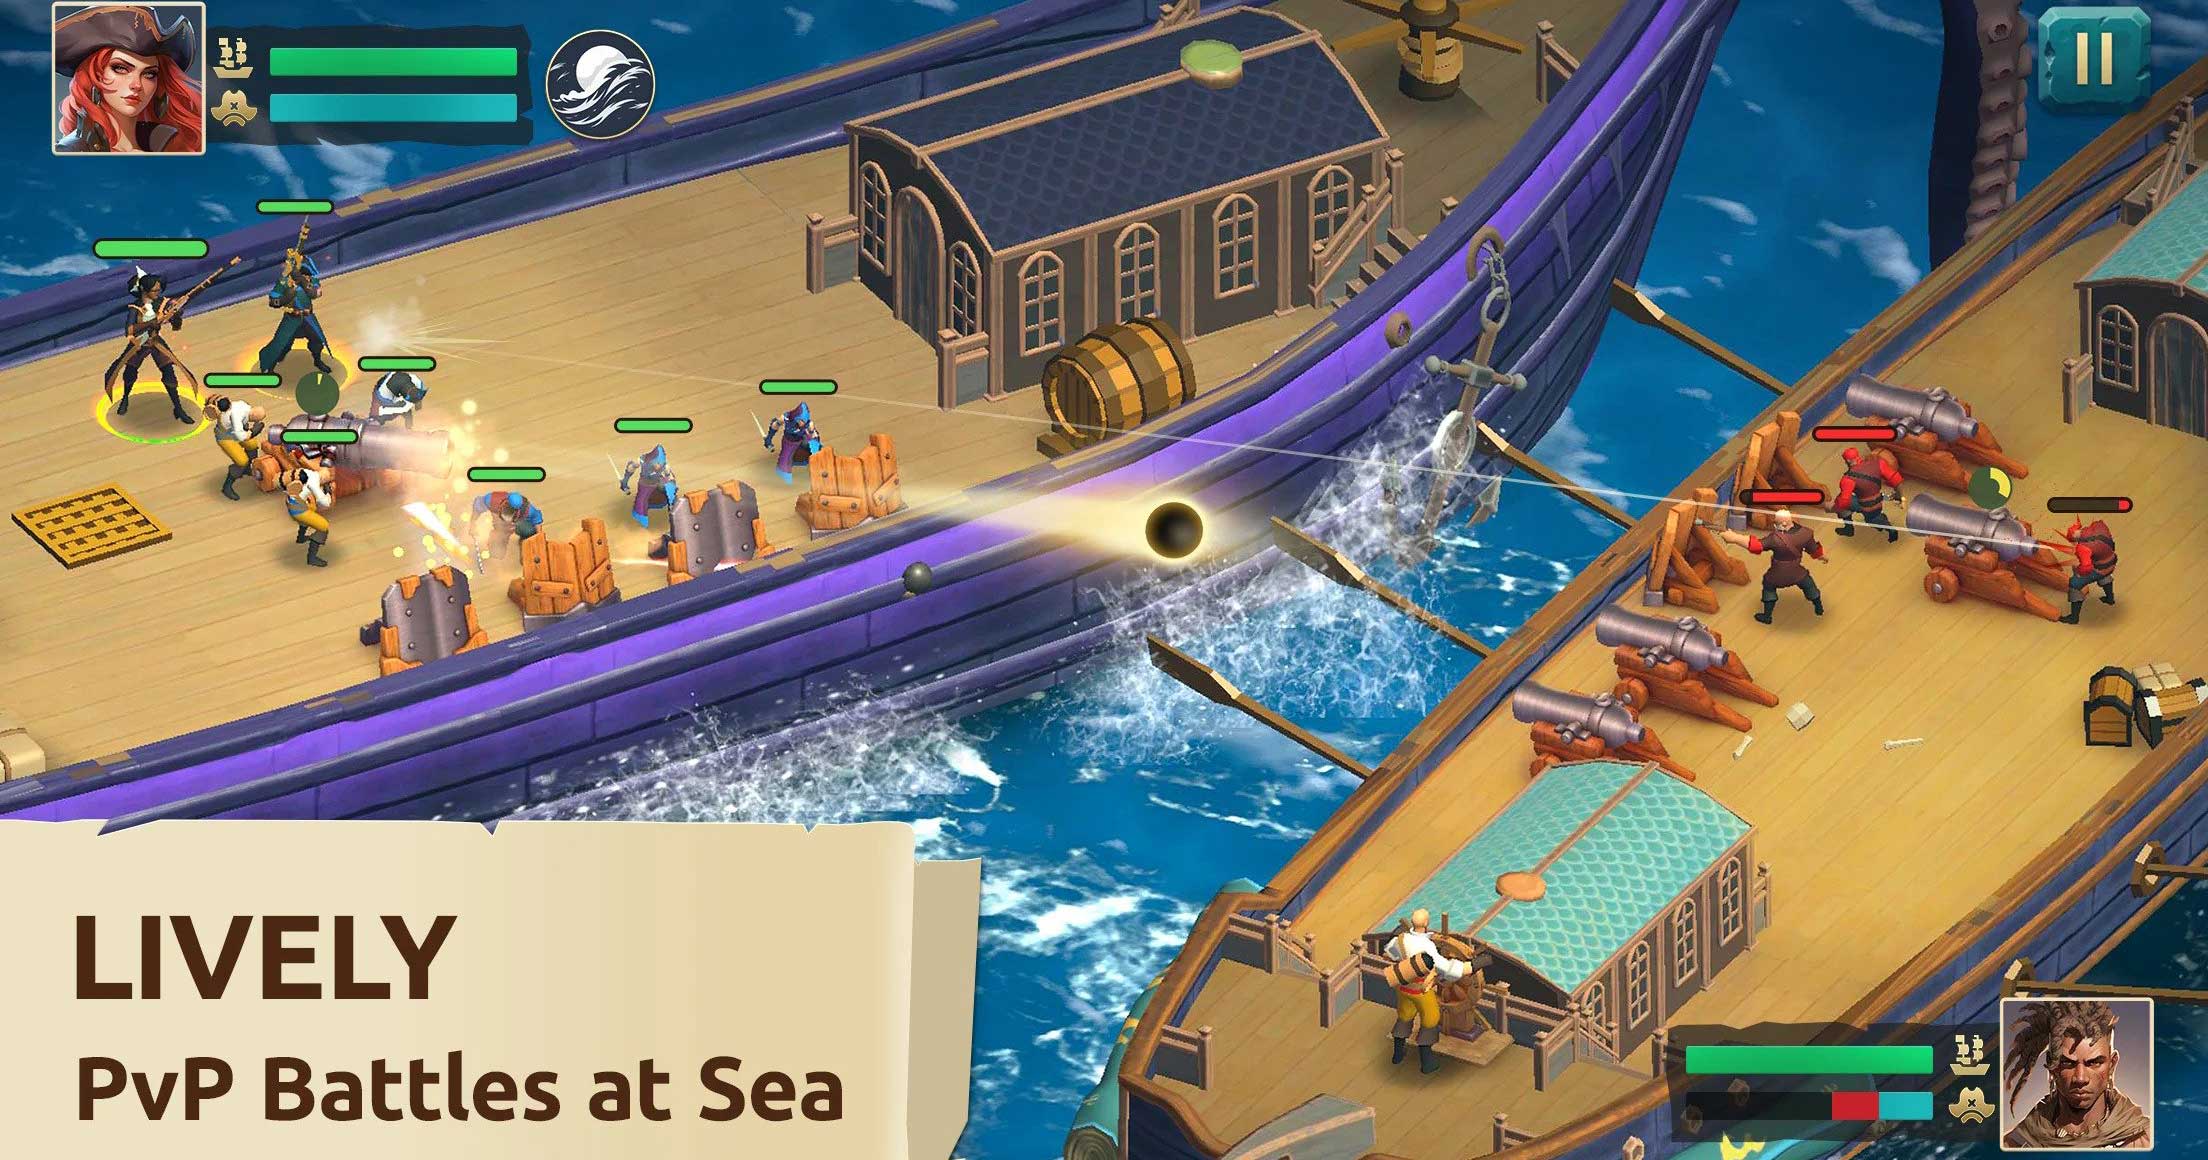 Pirate Ships – Game chiến thuật đề tài hải tặc ngàn người xếp hàng chờ đợi để chơi